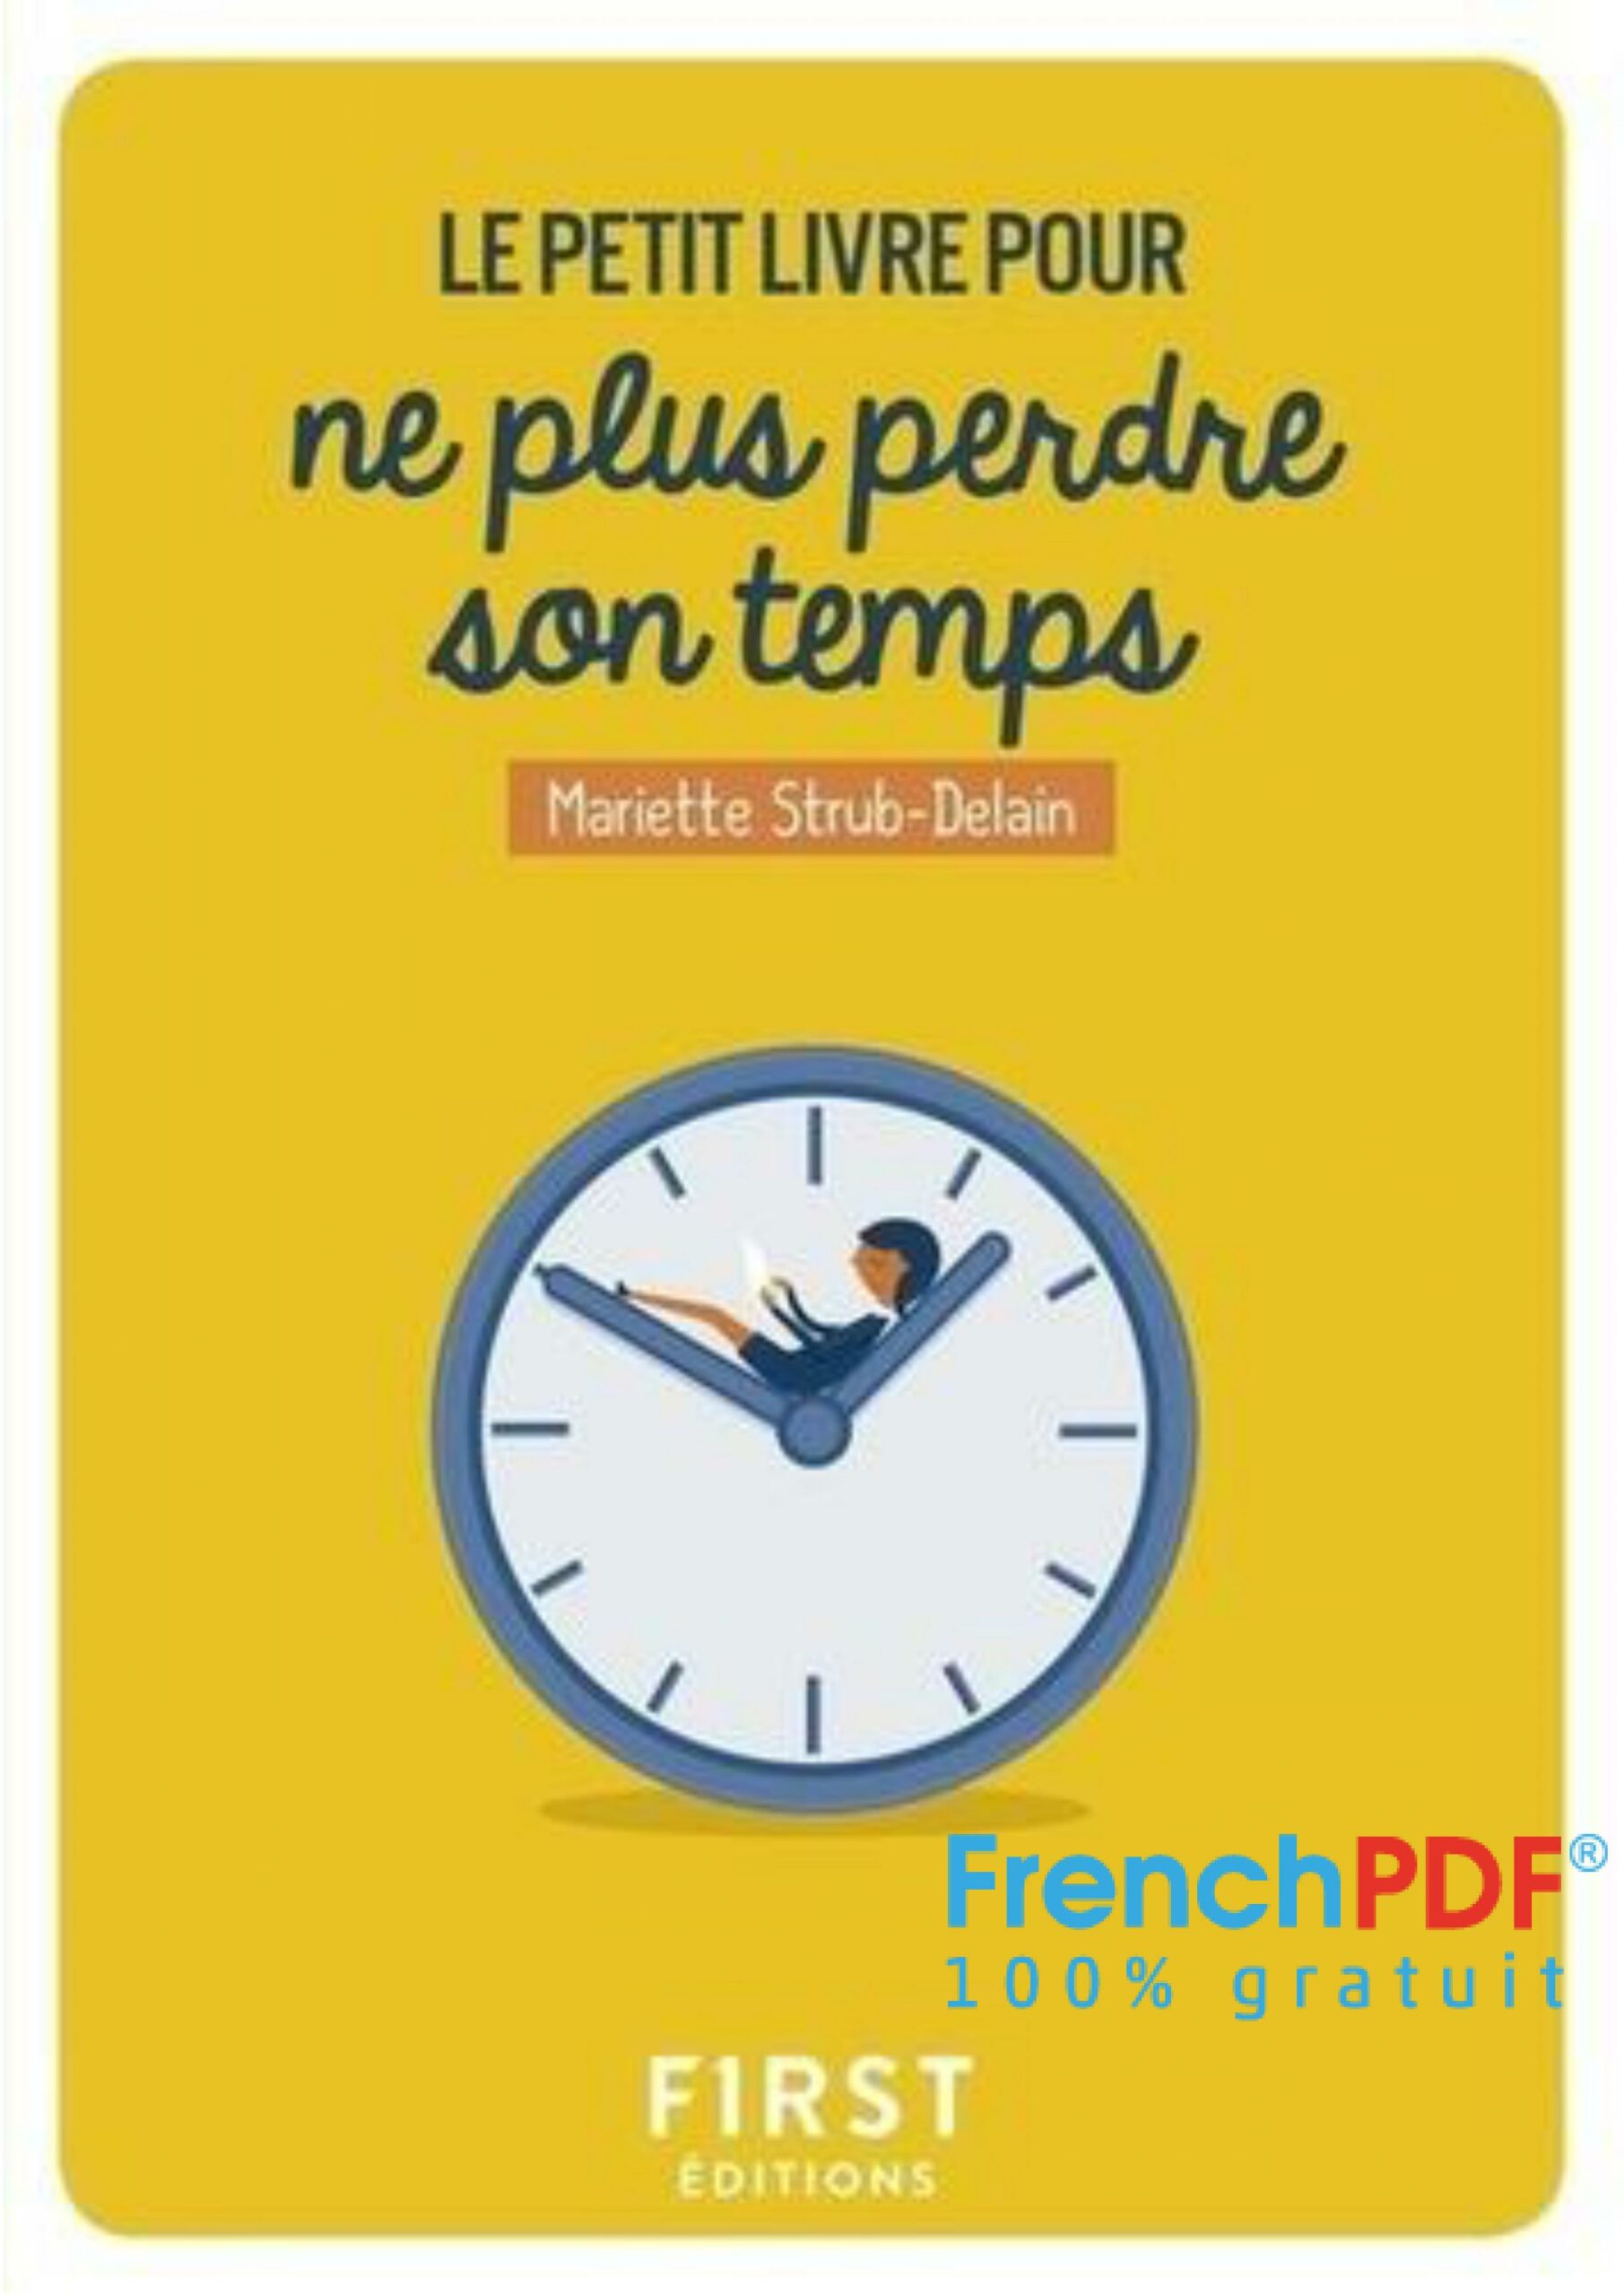 Le petit livre pour ne plus perdre son temps PDF - FrenchPDF.com